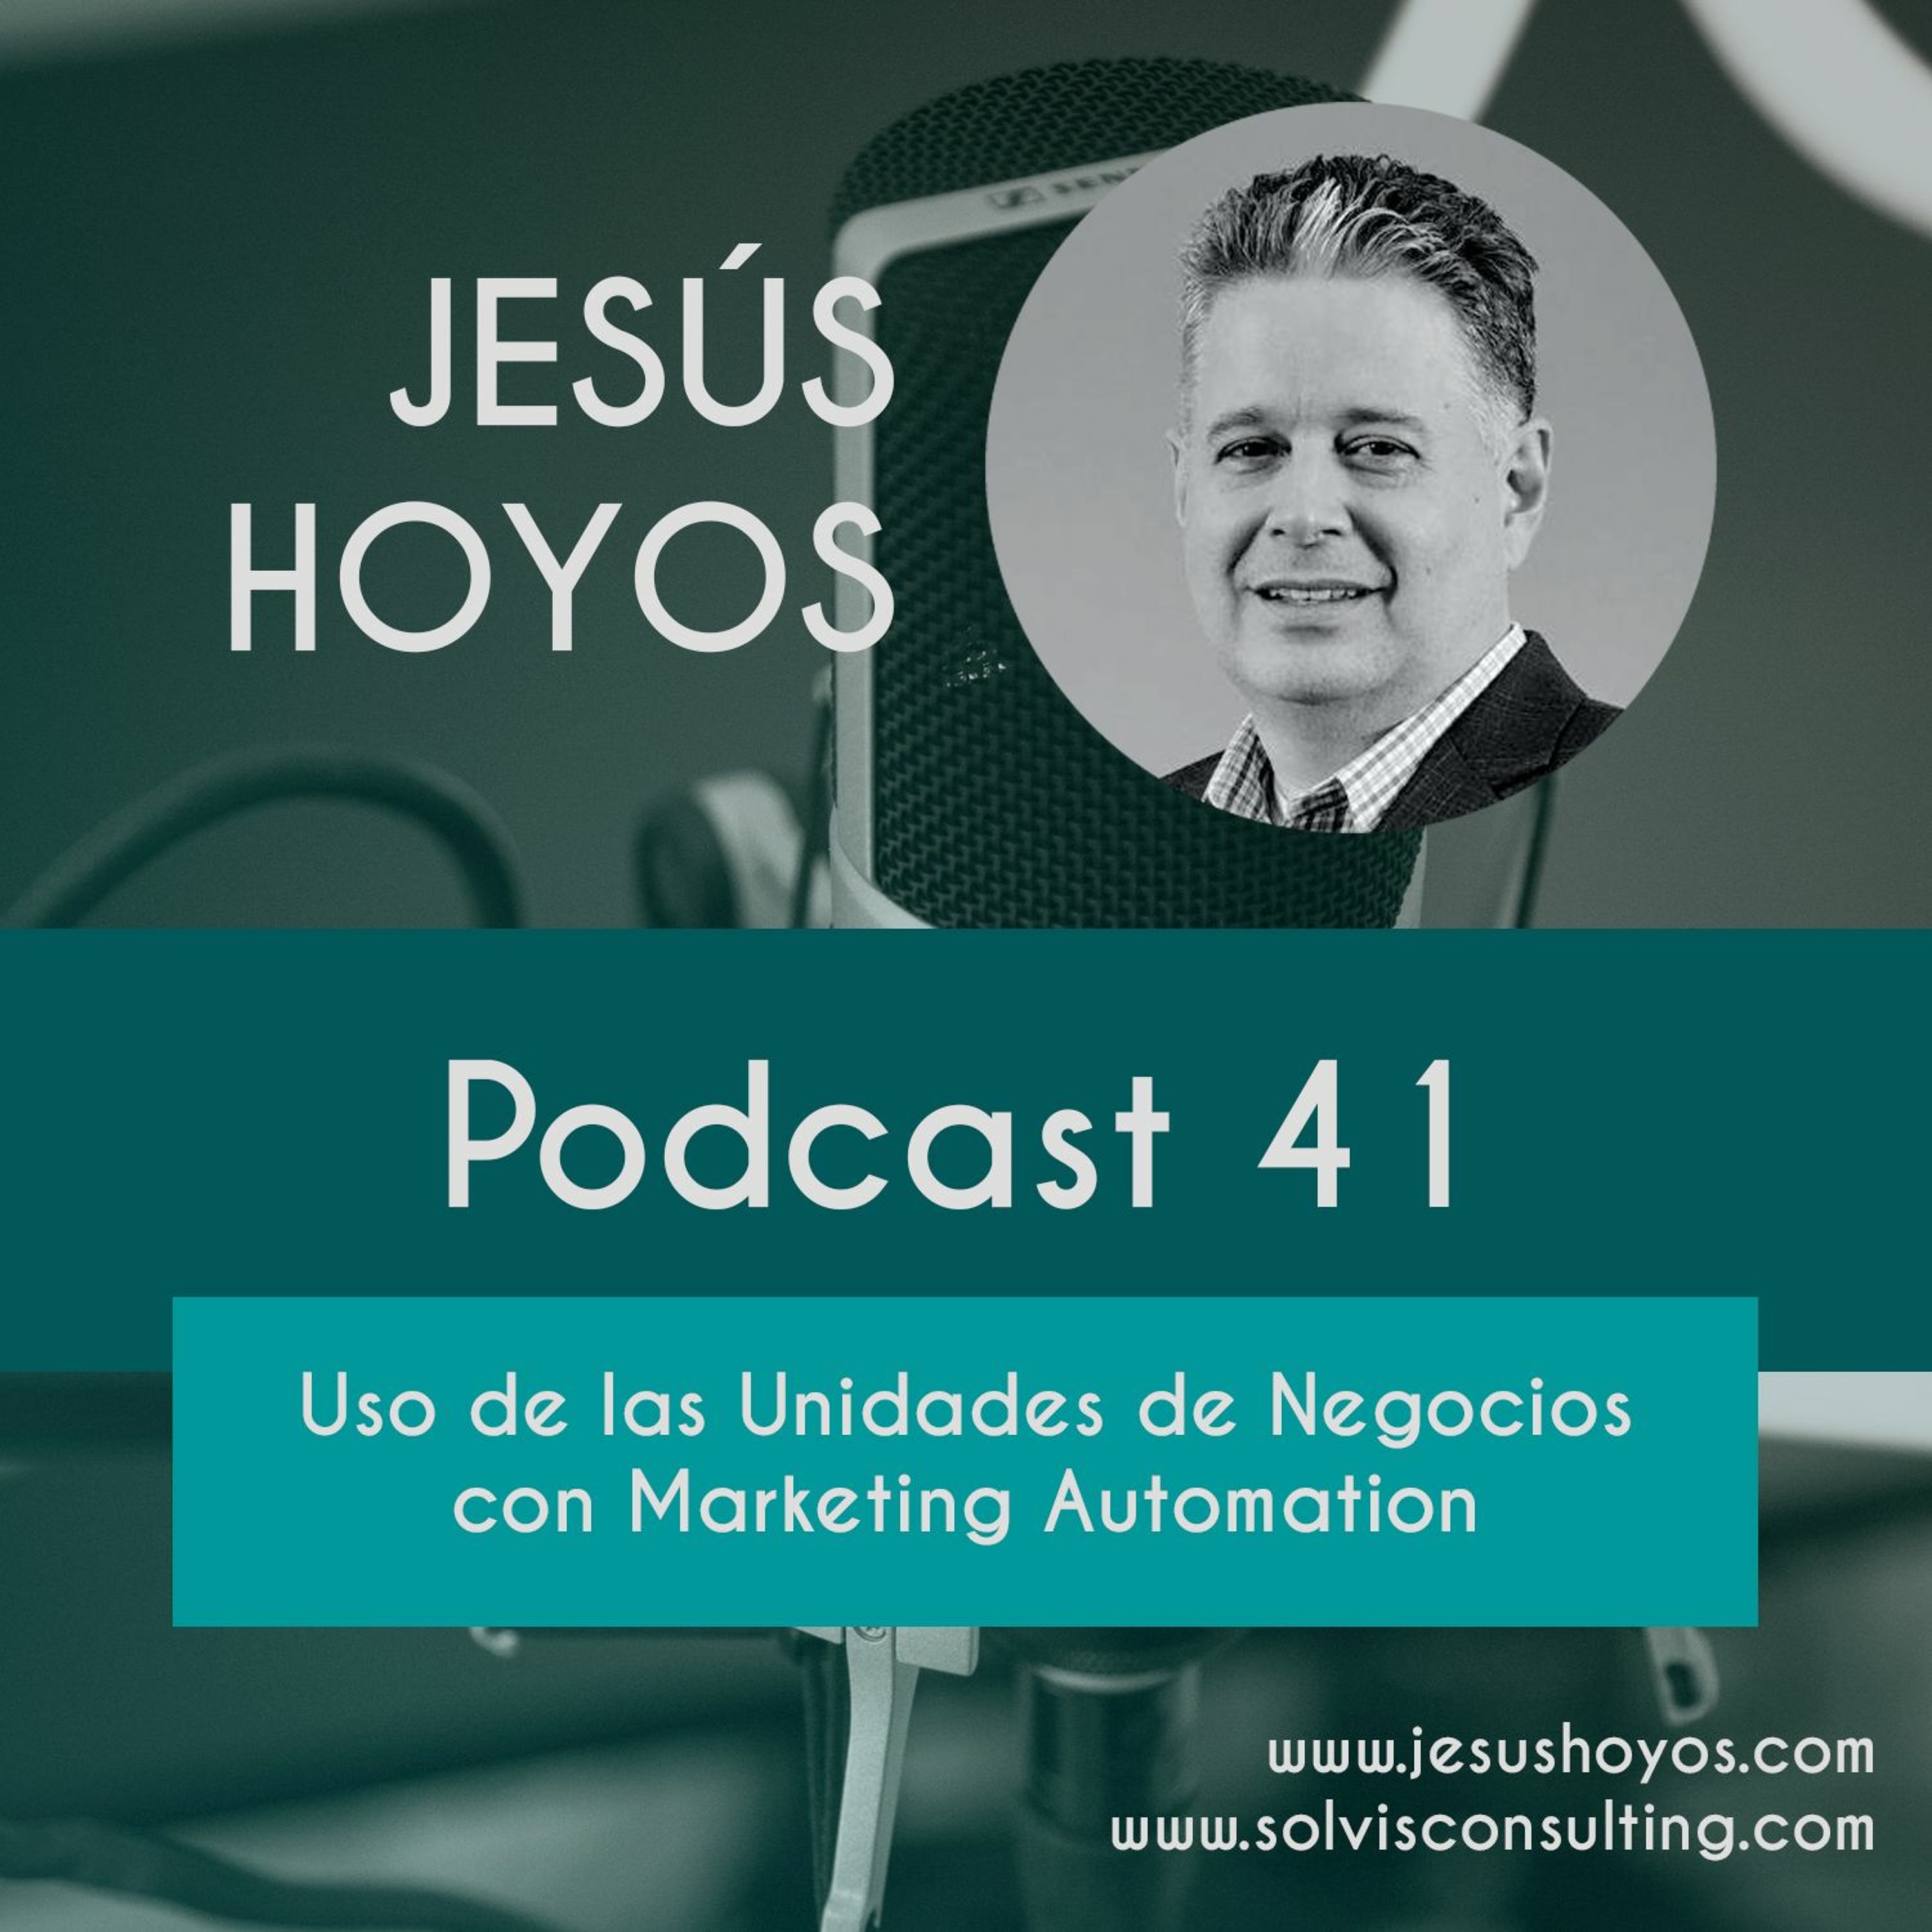 Podcast 41 - Uso de las Unidades de Negocios con Marketing Automation